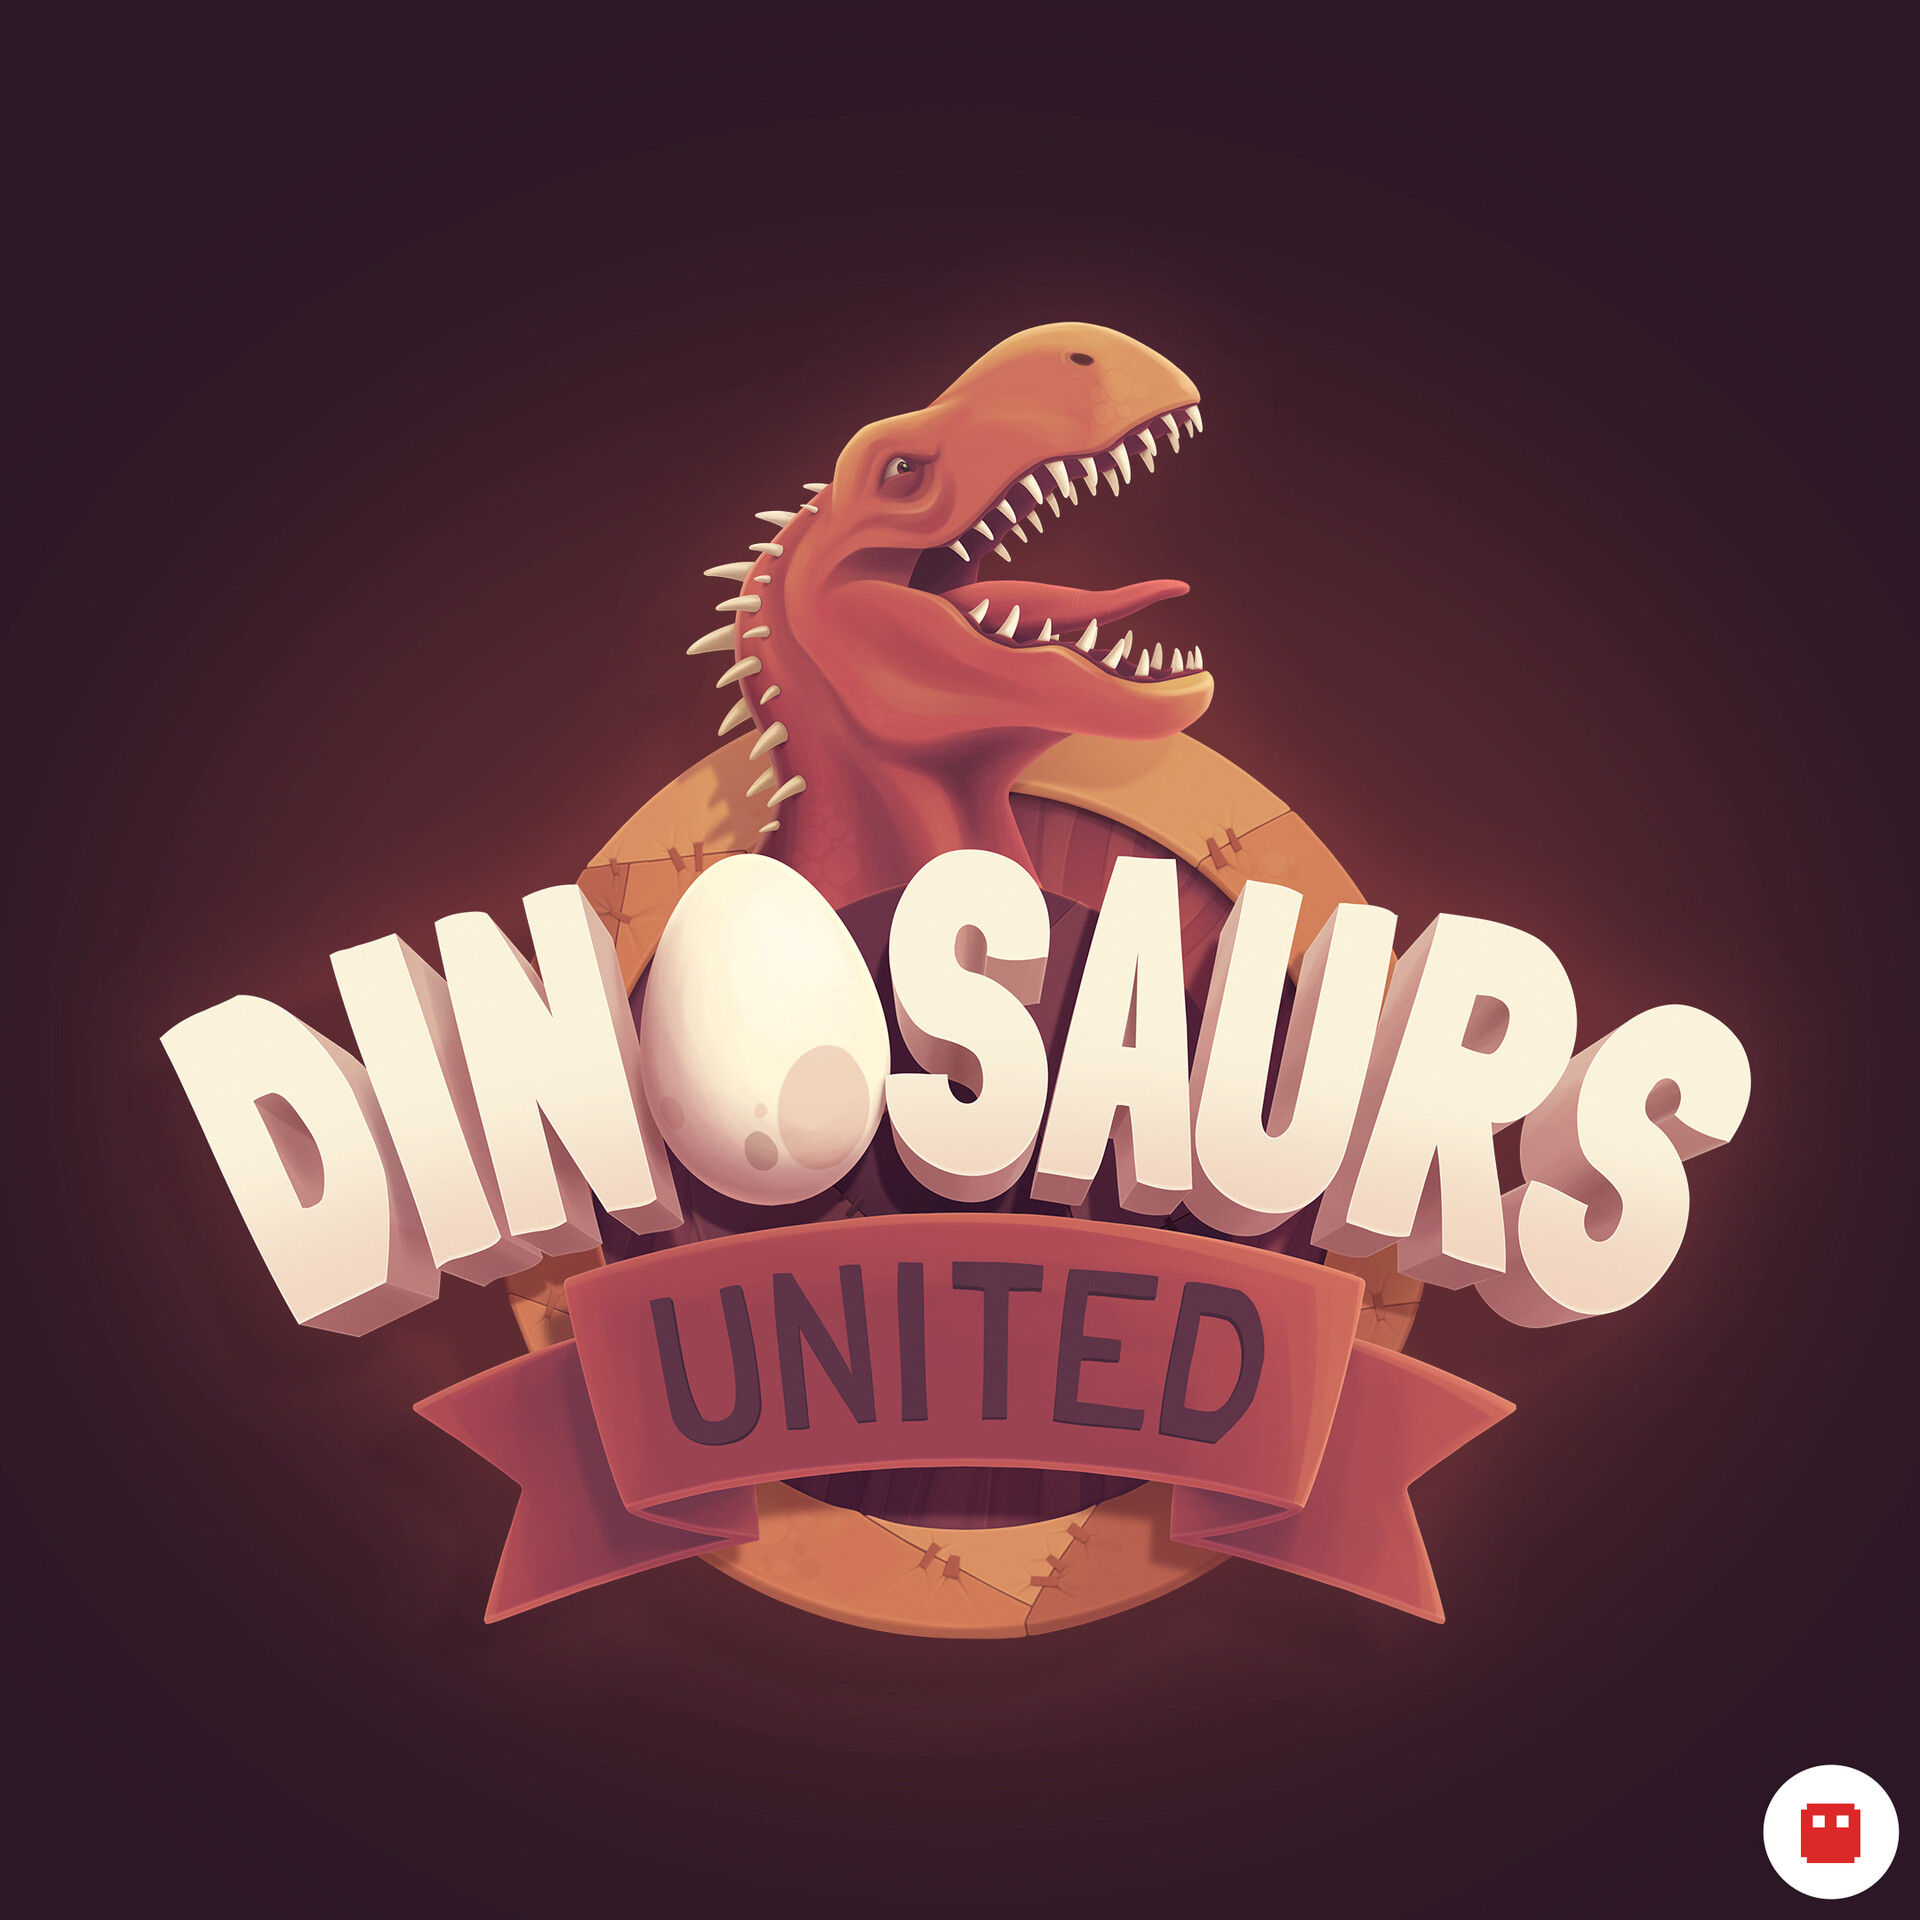 ArtStation - Dinosaurs United